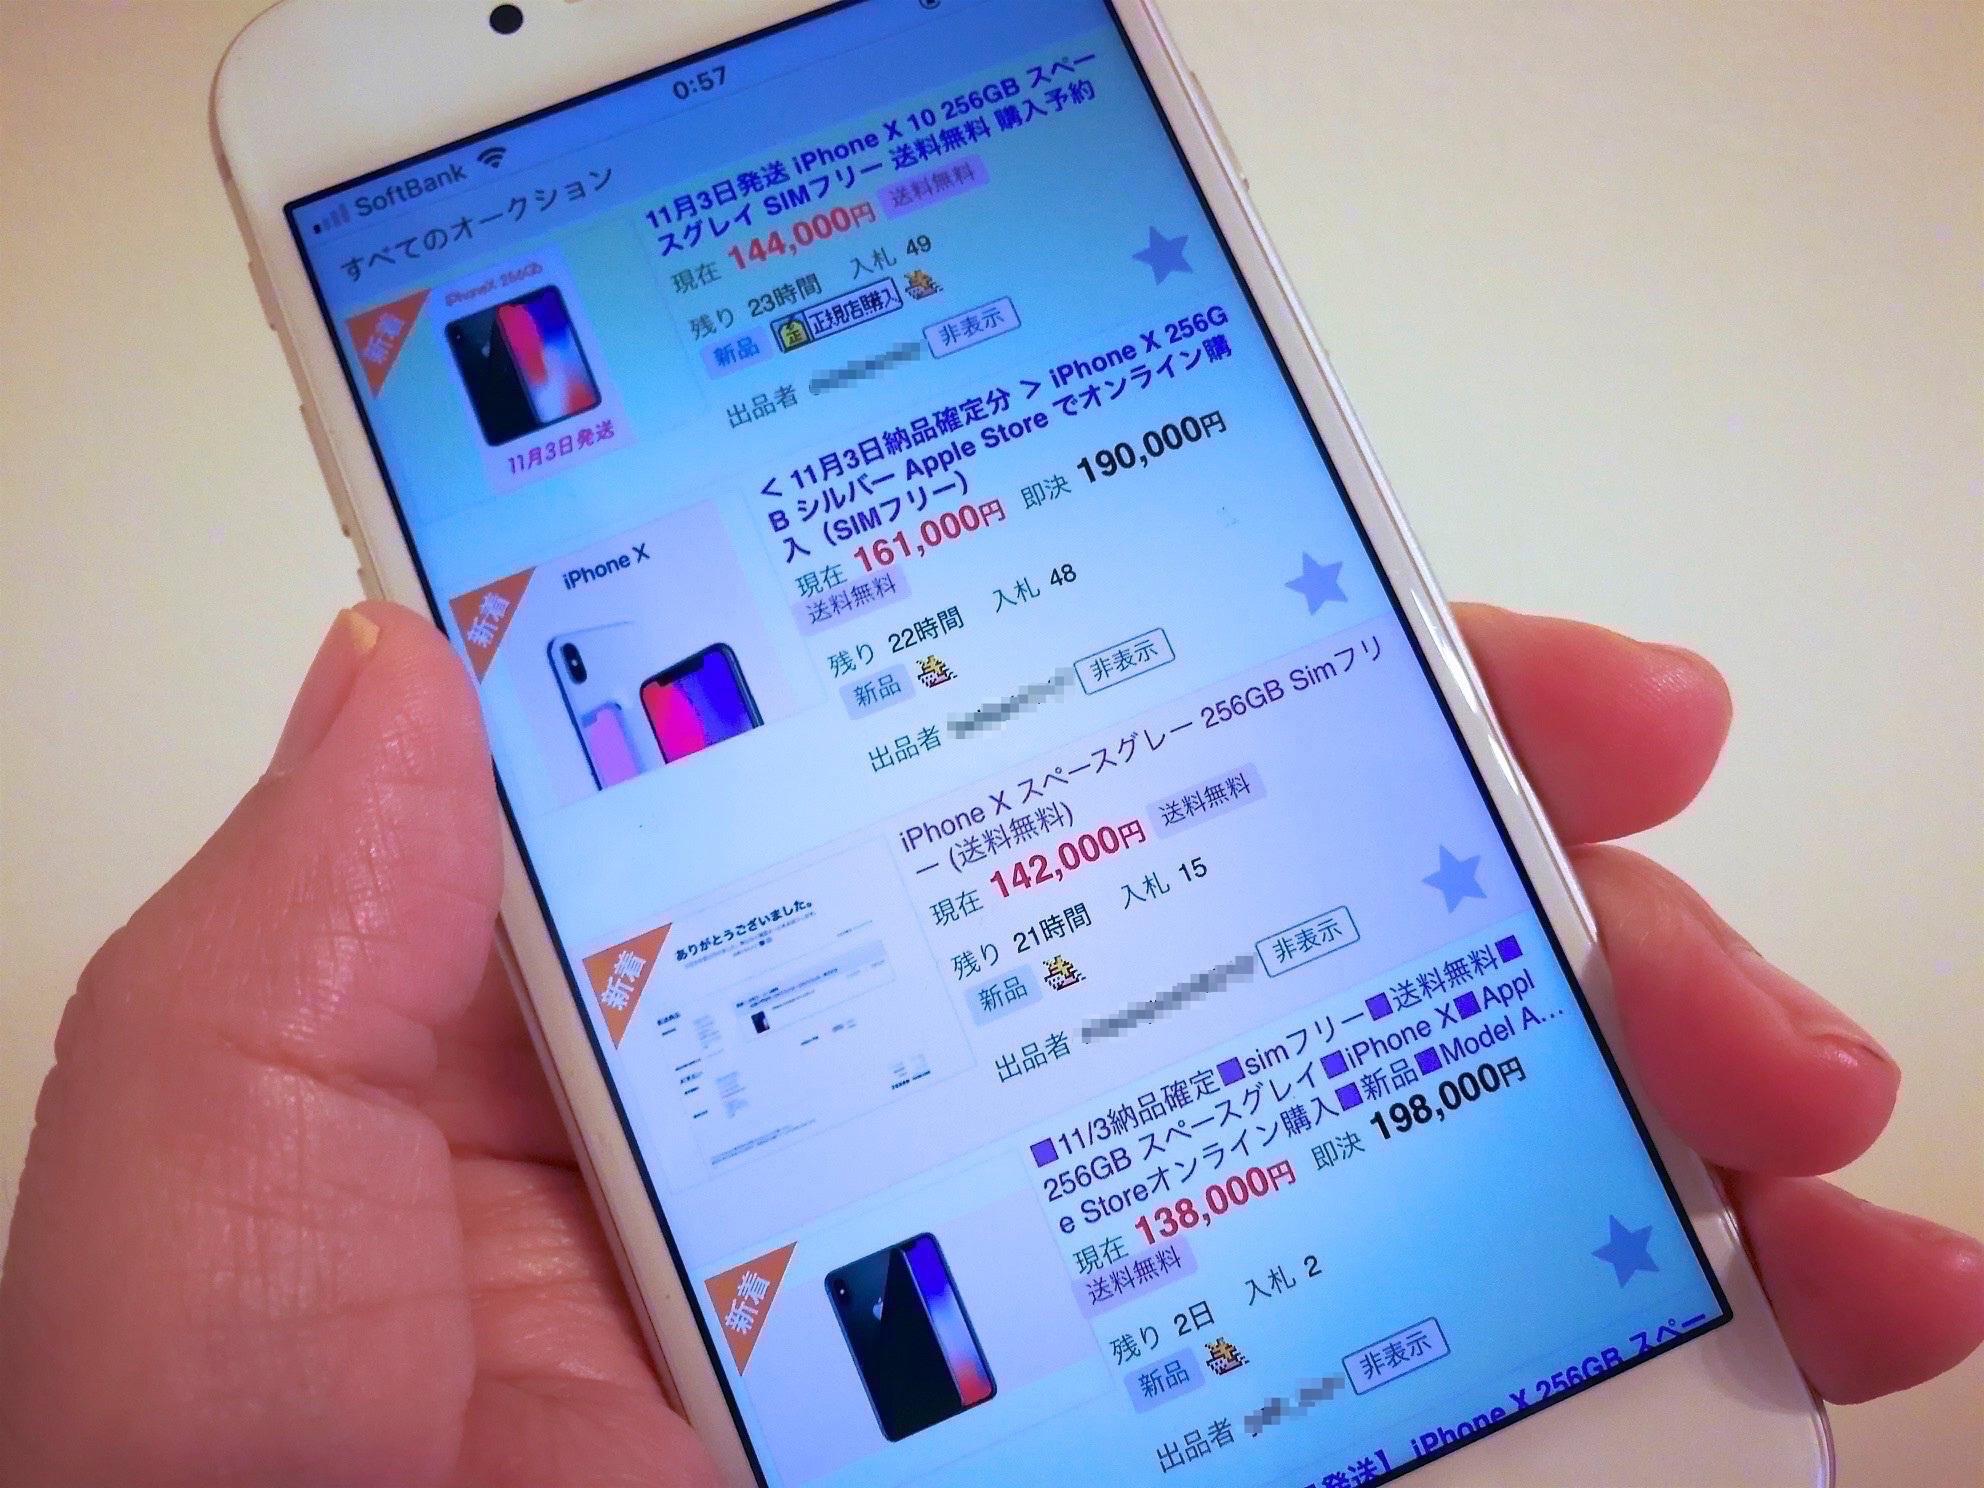 白熱するiPhone X狂想曲、ヤフオクで転売19万円の例も —— 発売は11月3